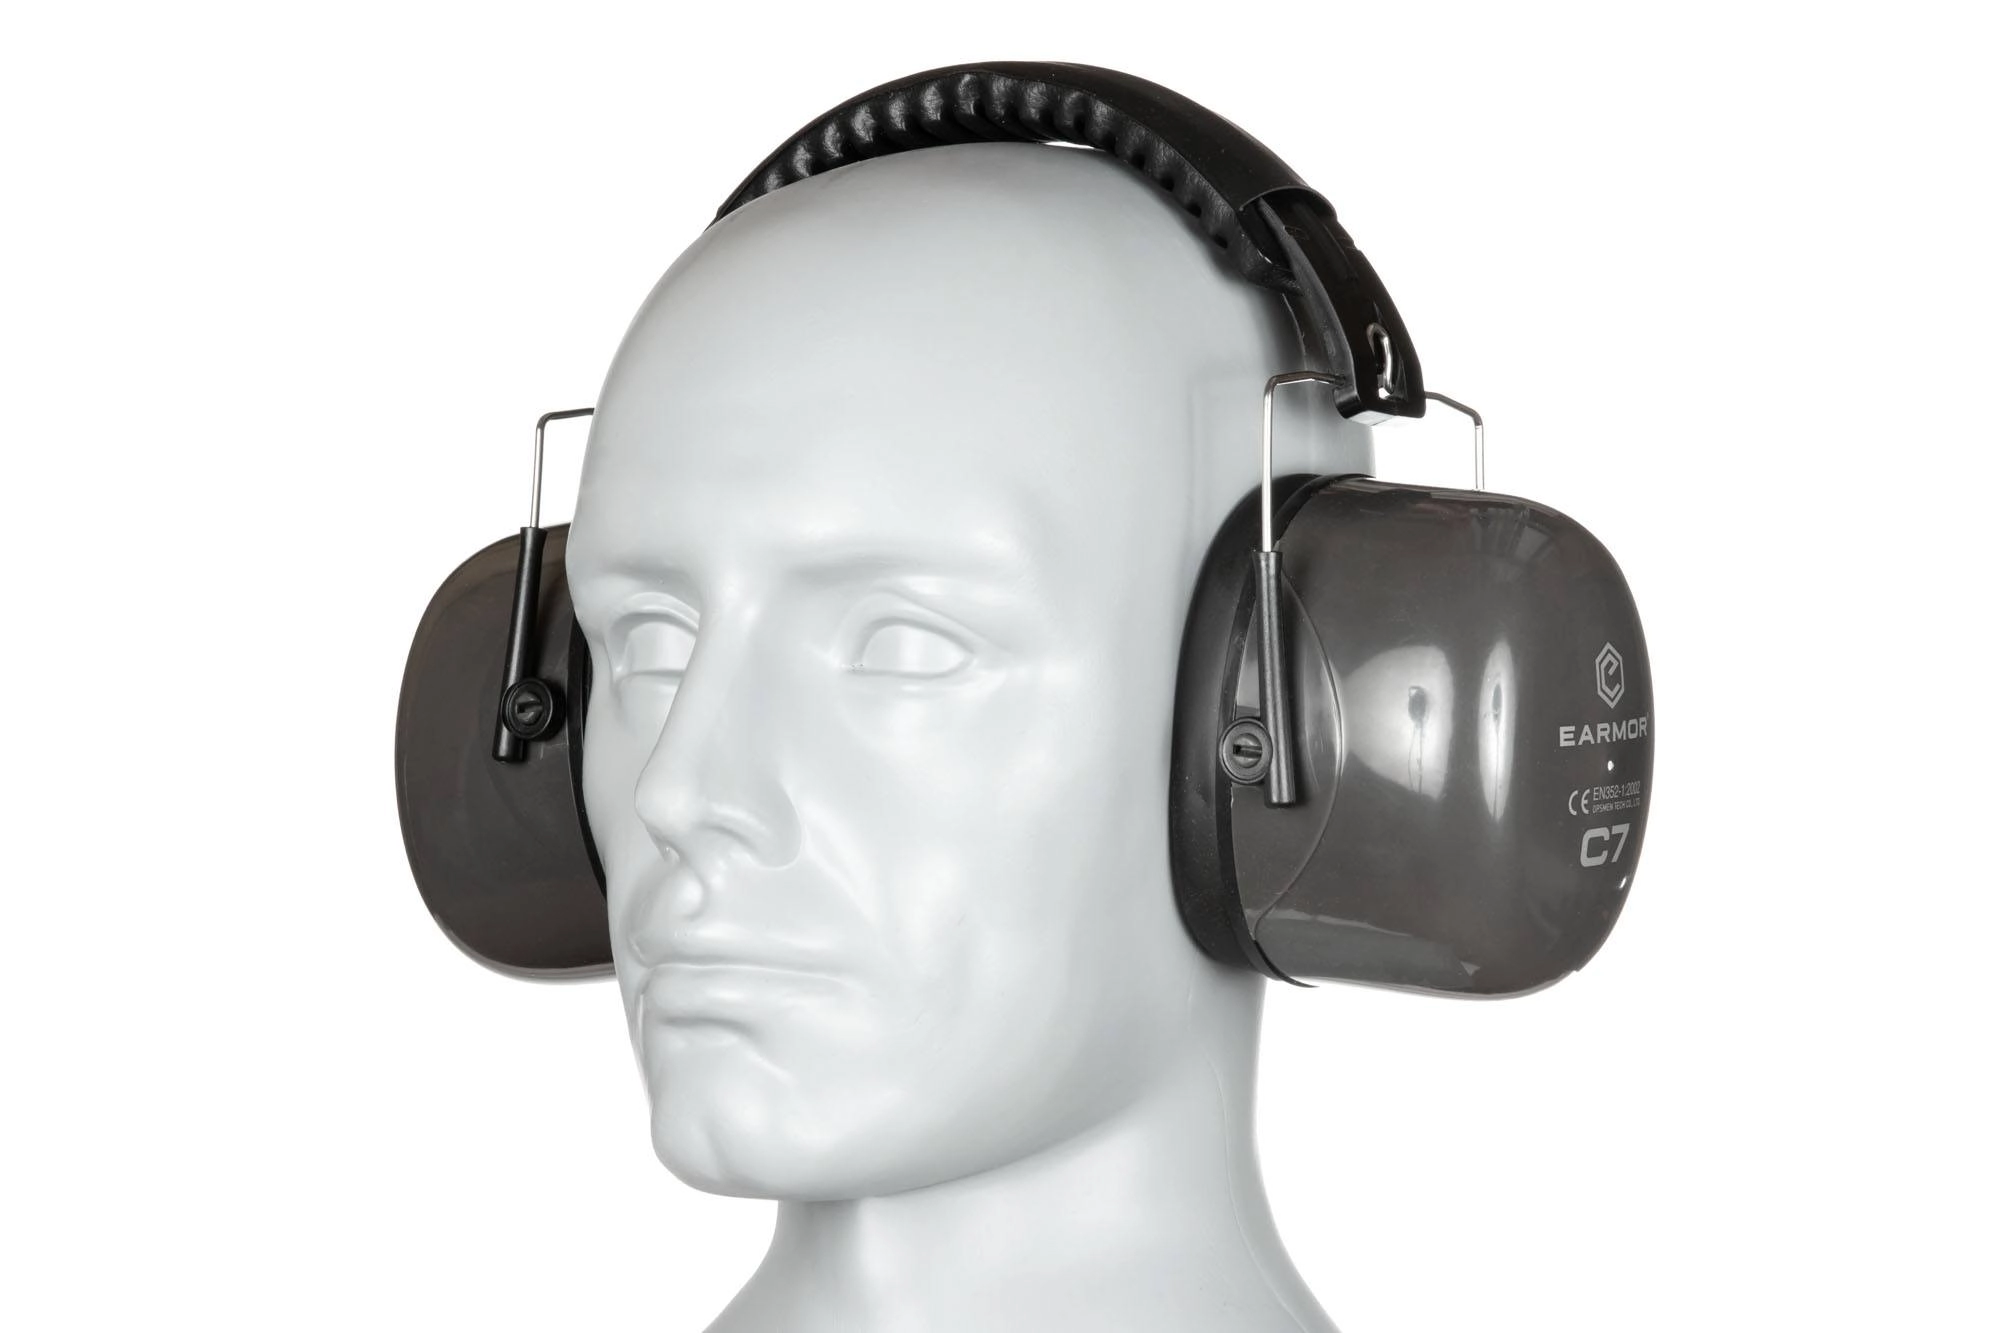 Pasivní chrániče sluchu C7A - šedé